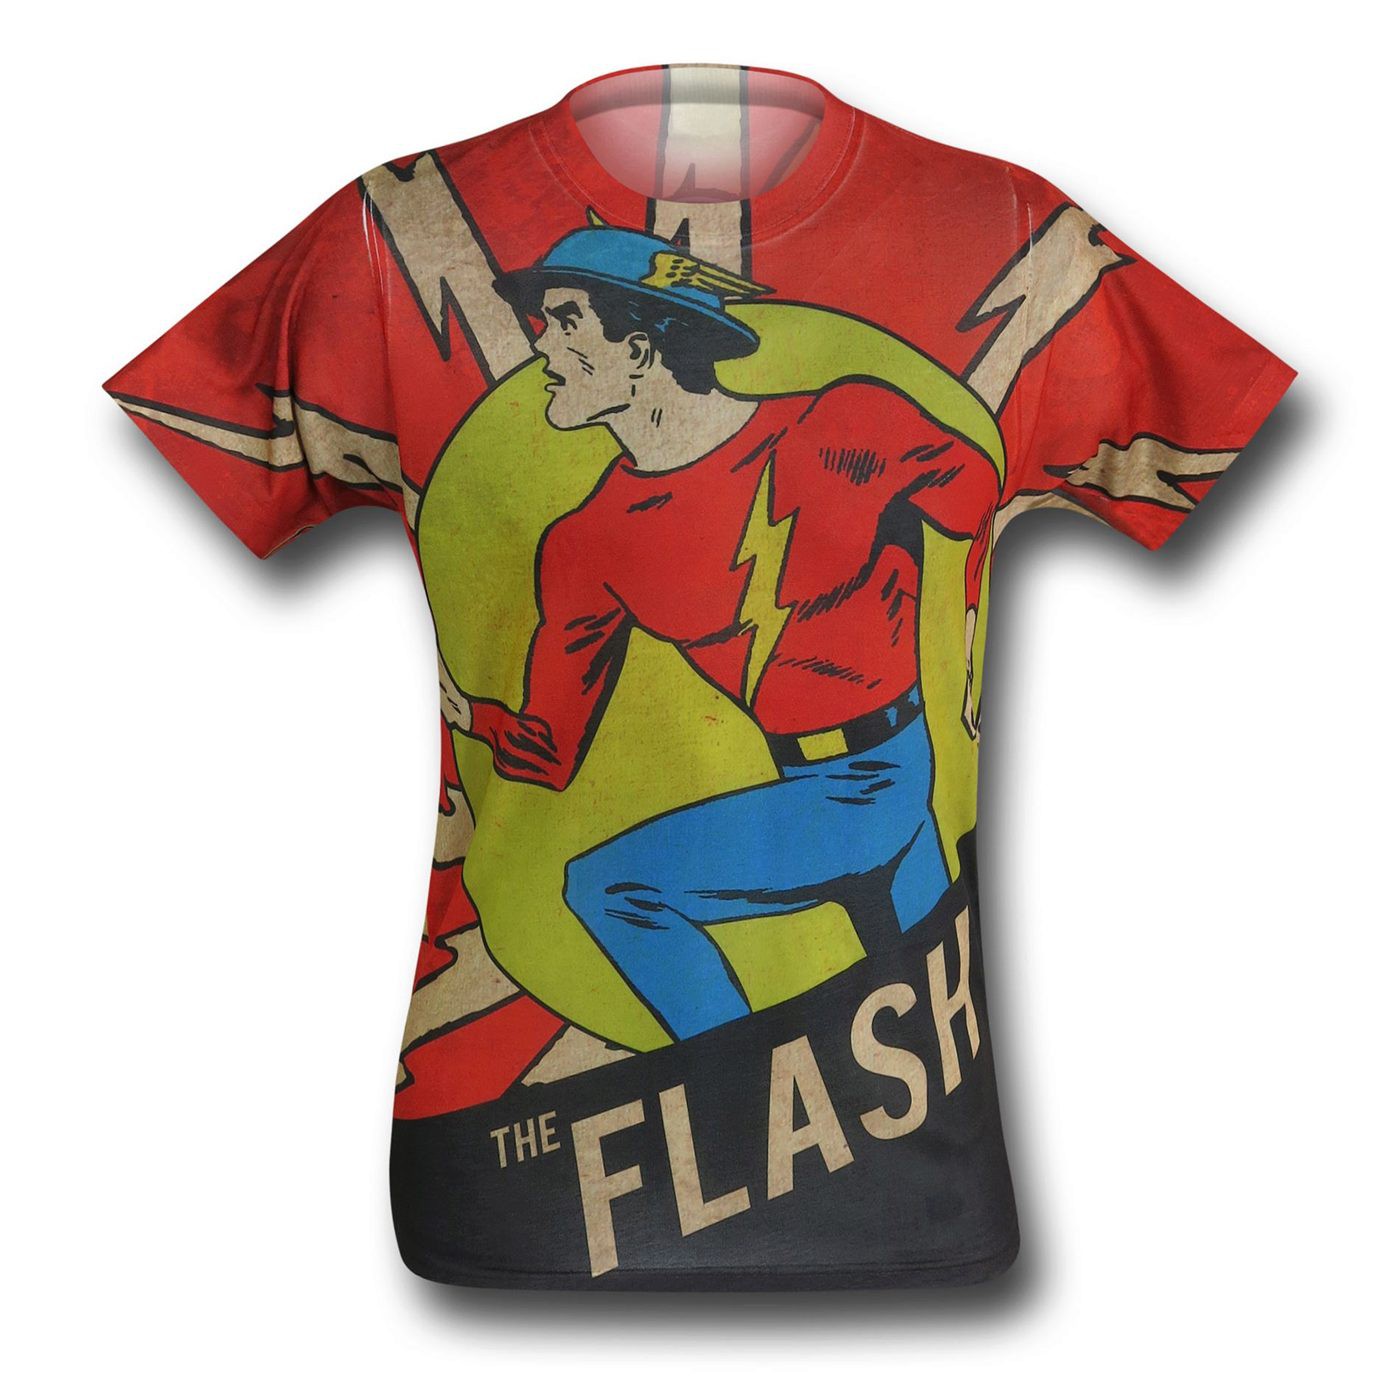 Flash Jay Garrick Sublimated T-Shirt